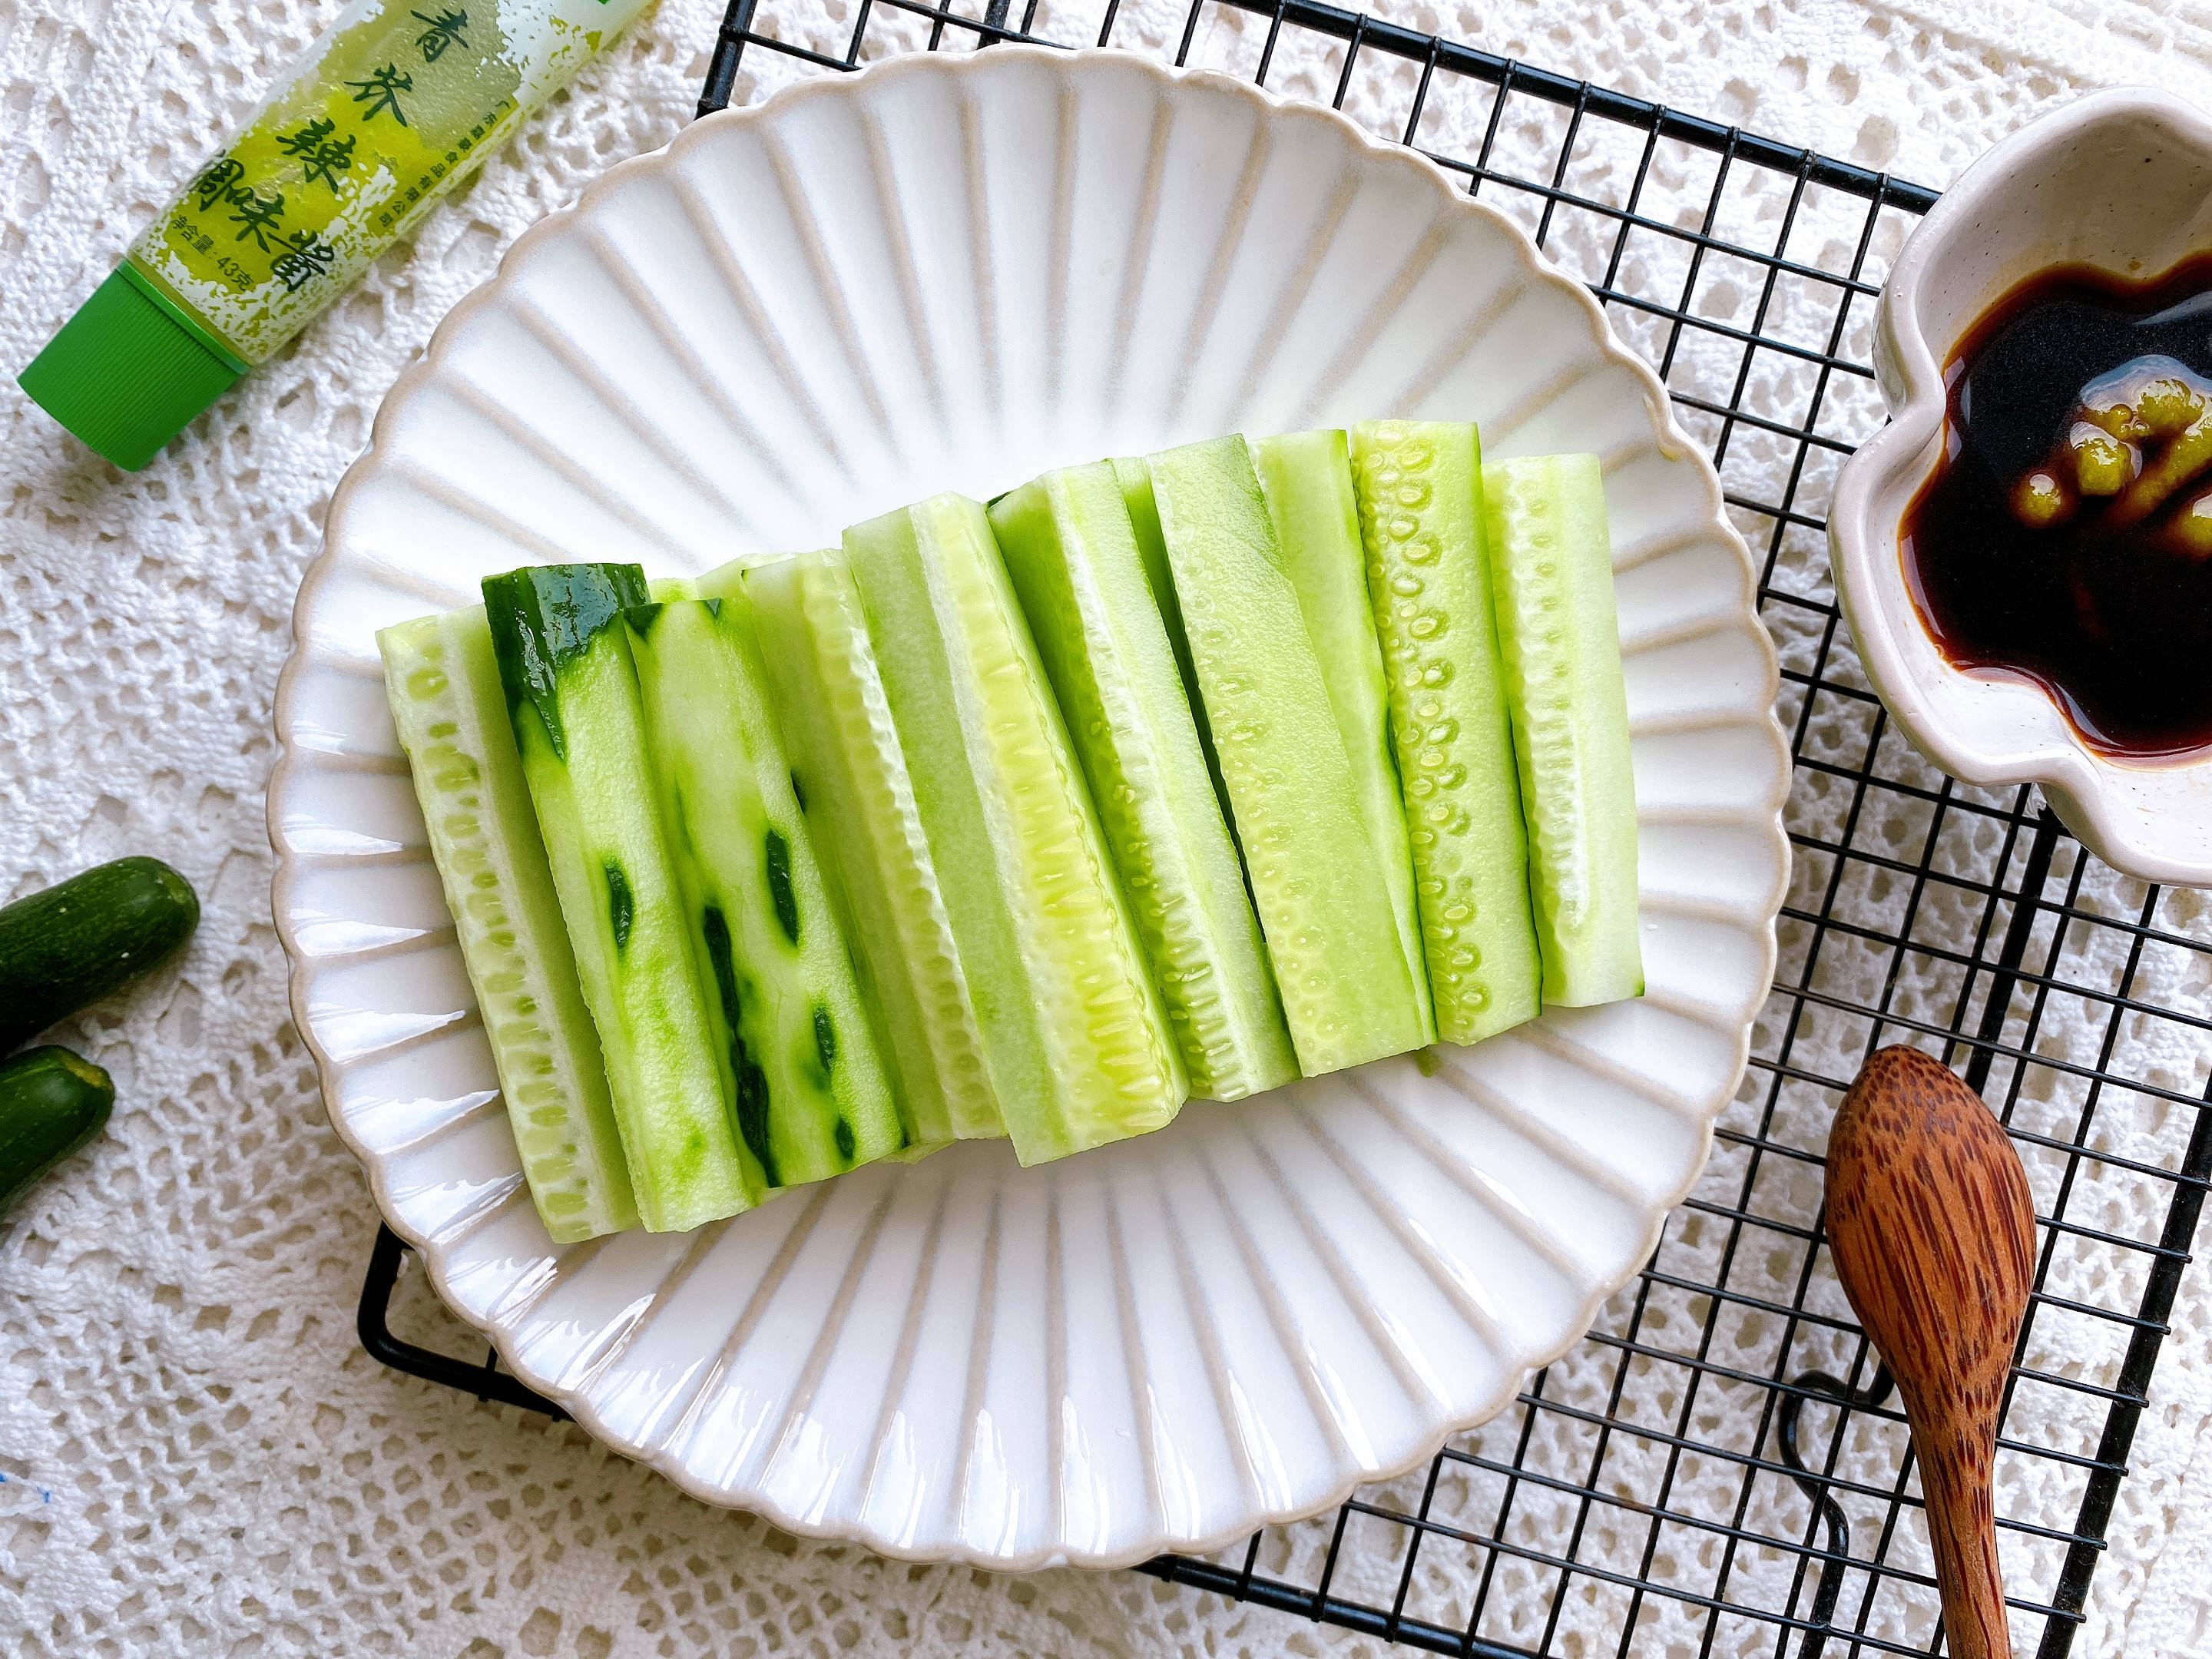 原创黄瓜和芥末是什么神仙搭配夏季凉拌菜第一名清爽开胃解油腻